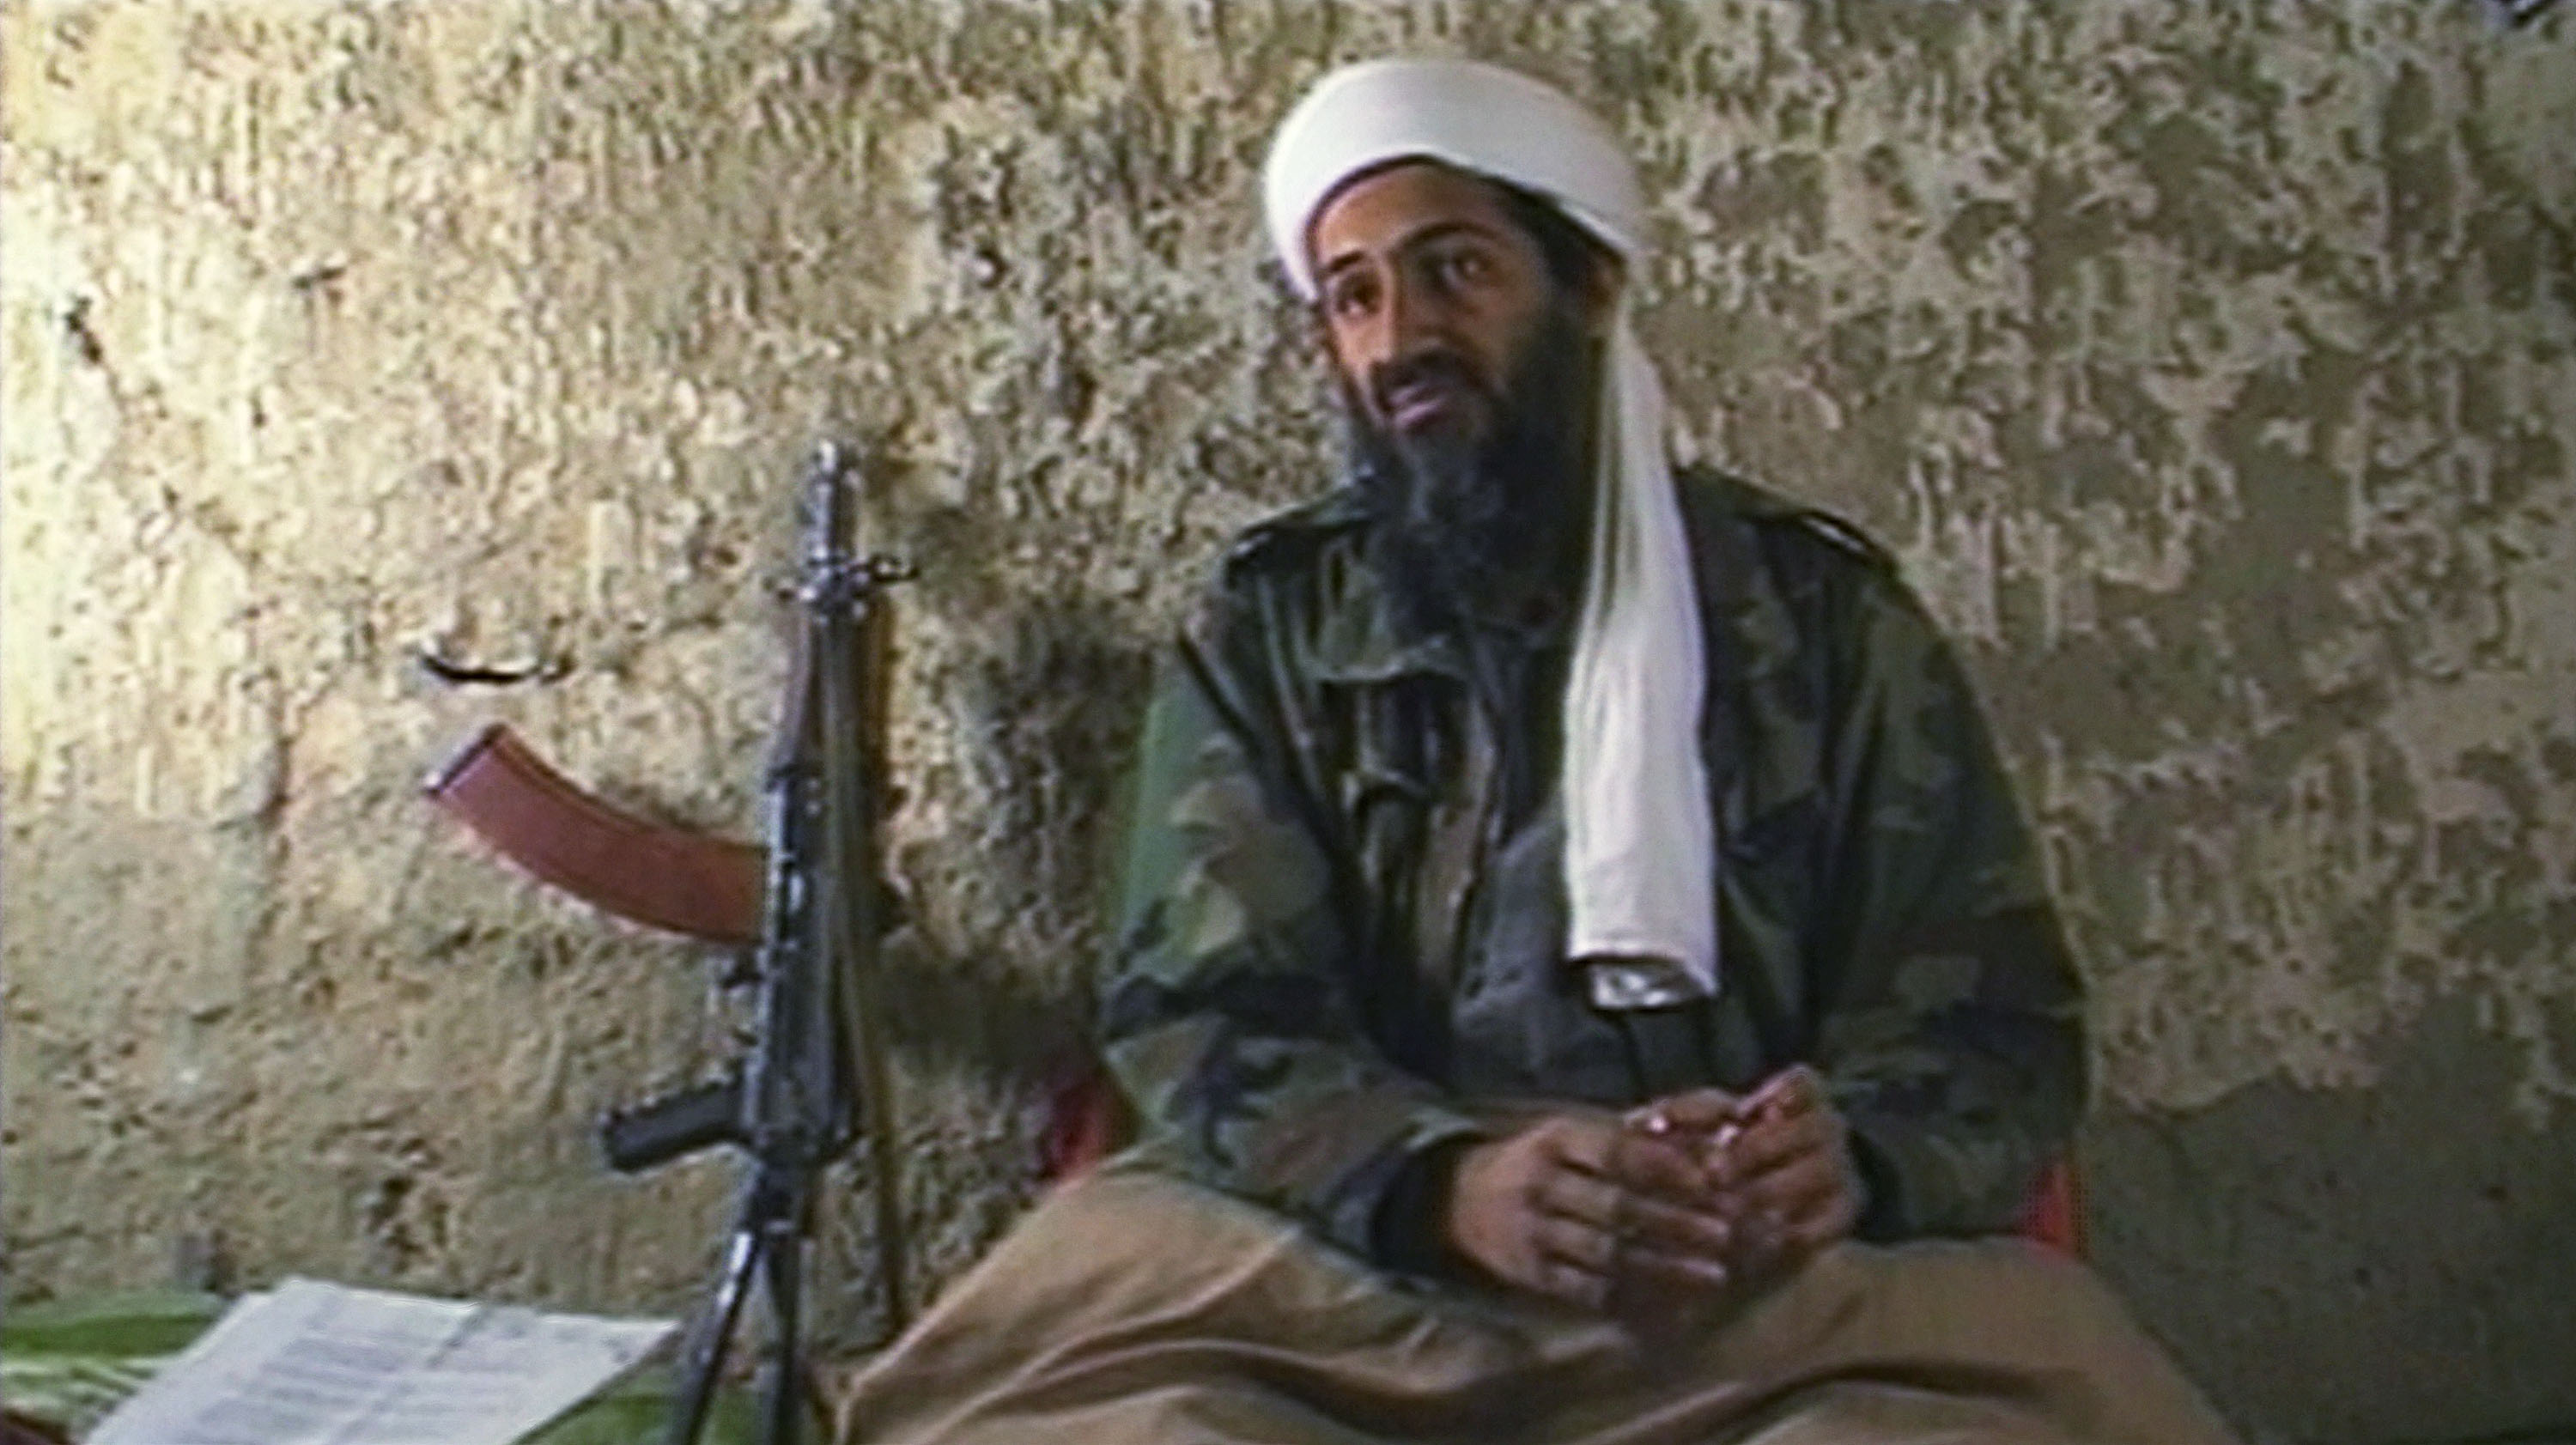 Аль каида лидер. Усама Бен Ладен Аль Каида. Сентябрь 2001 Усама Бен Ладен. Усама Бен Ладен террорист. Лидер Аль Каиды Усама Бен Ладен.